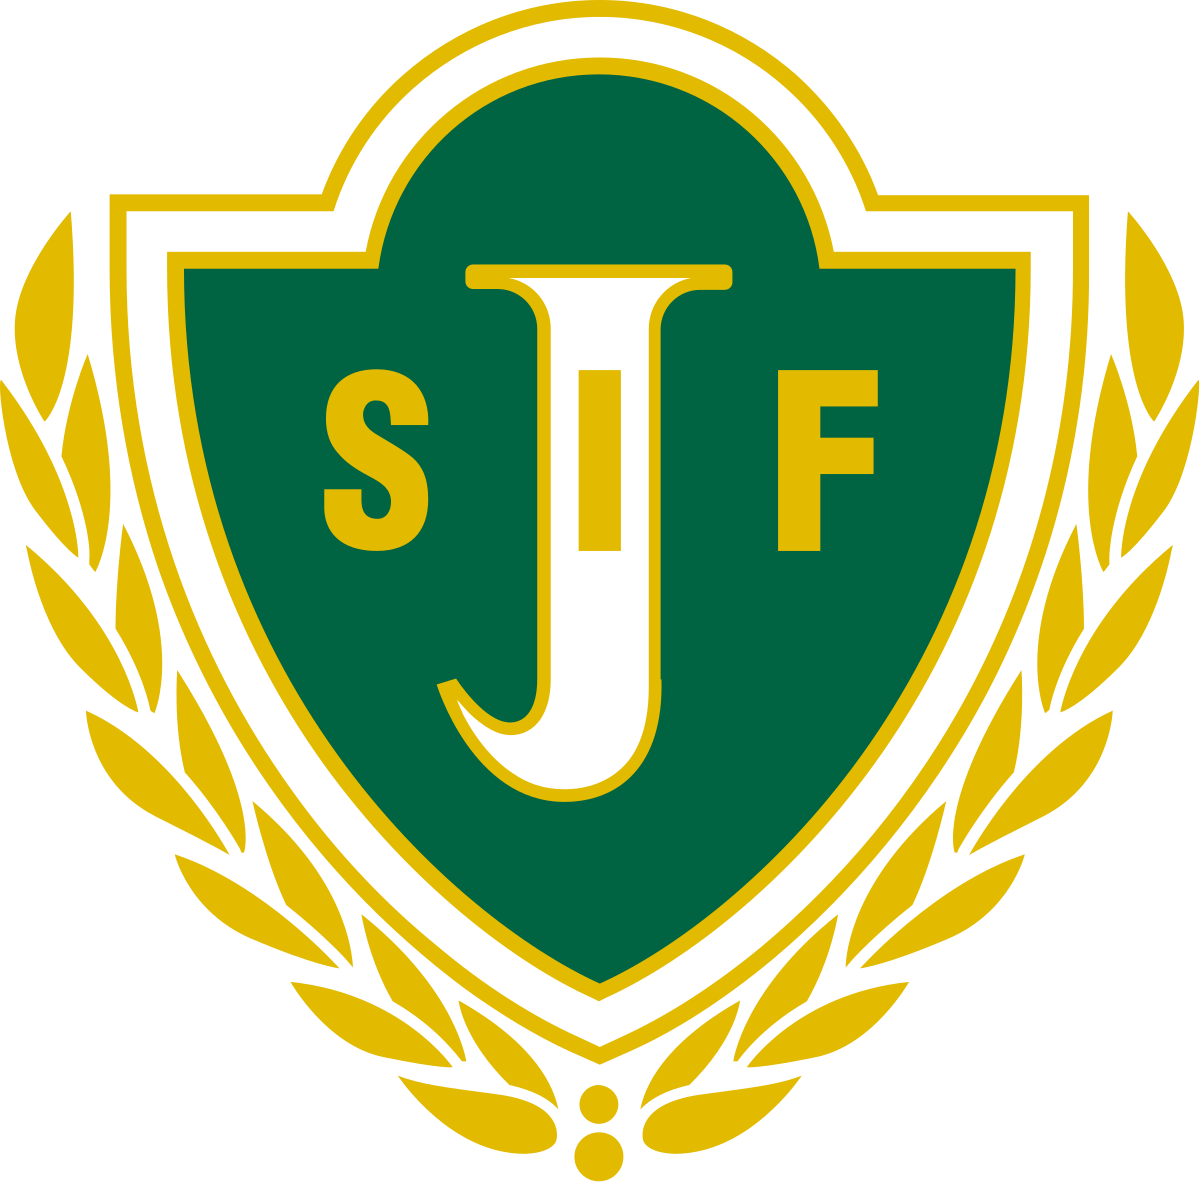 Jönköping Södra IF